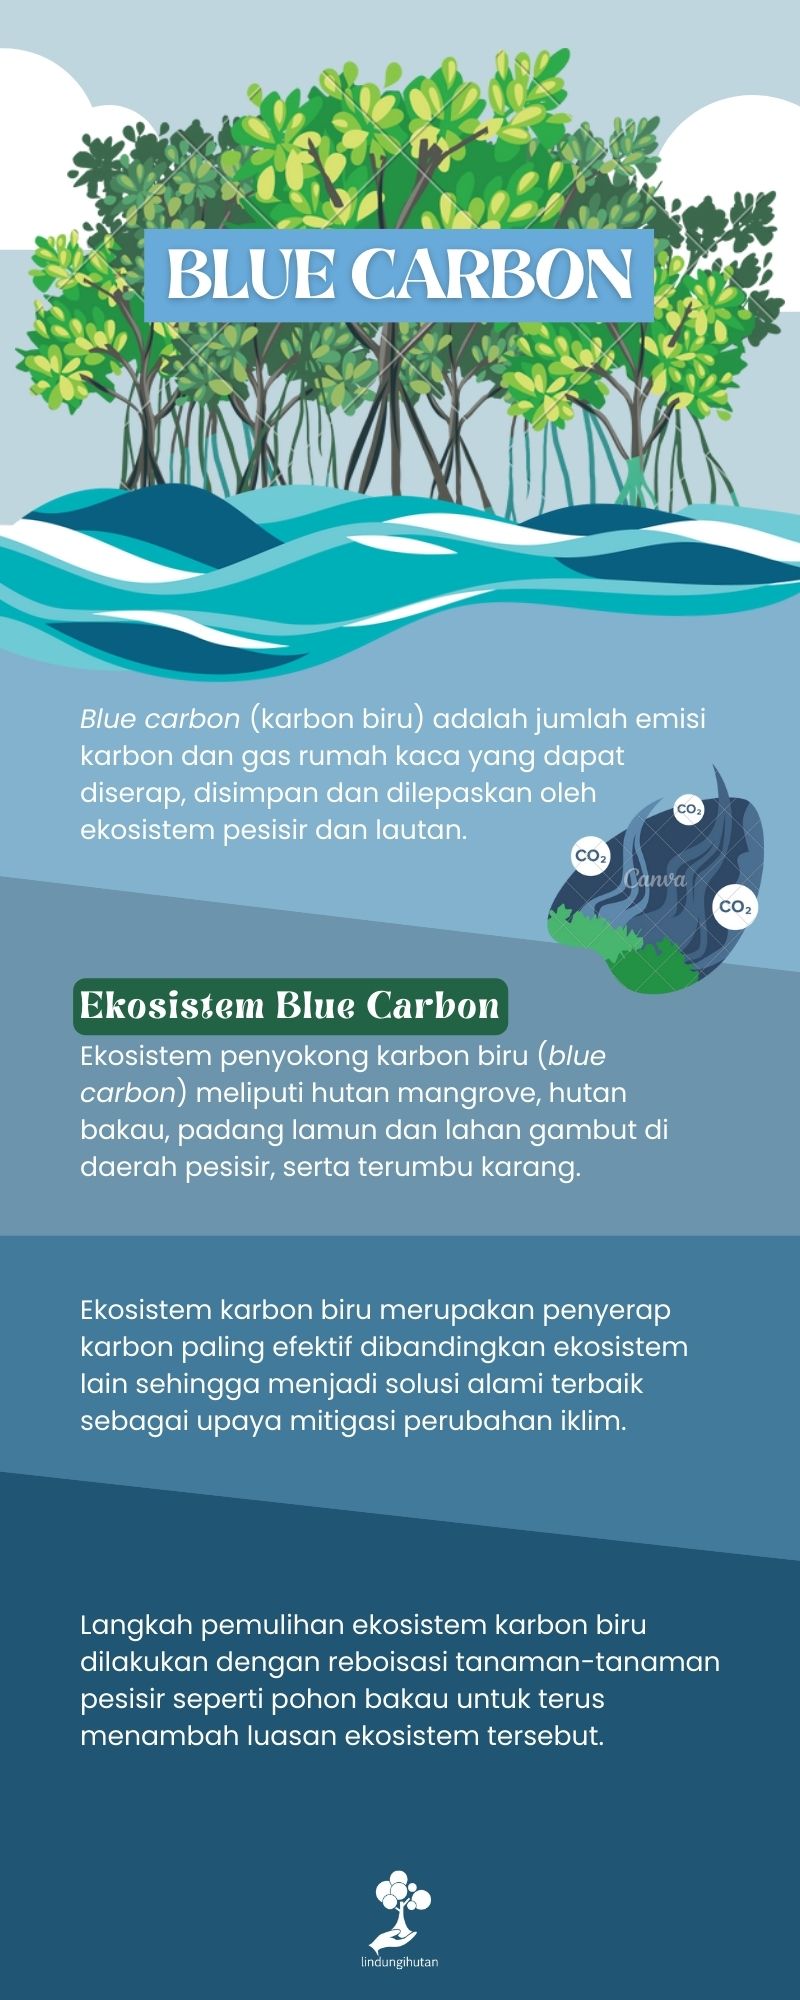 Blue carbon adalah.